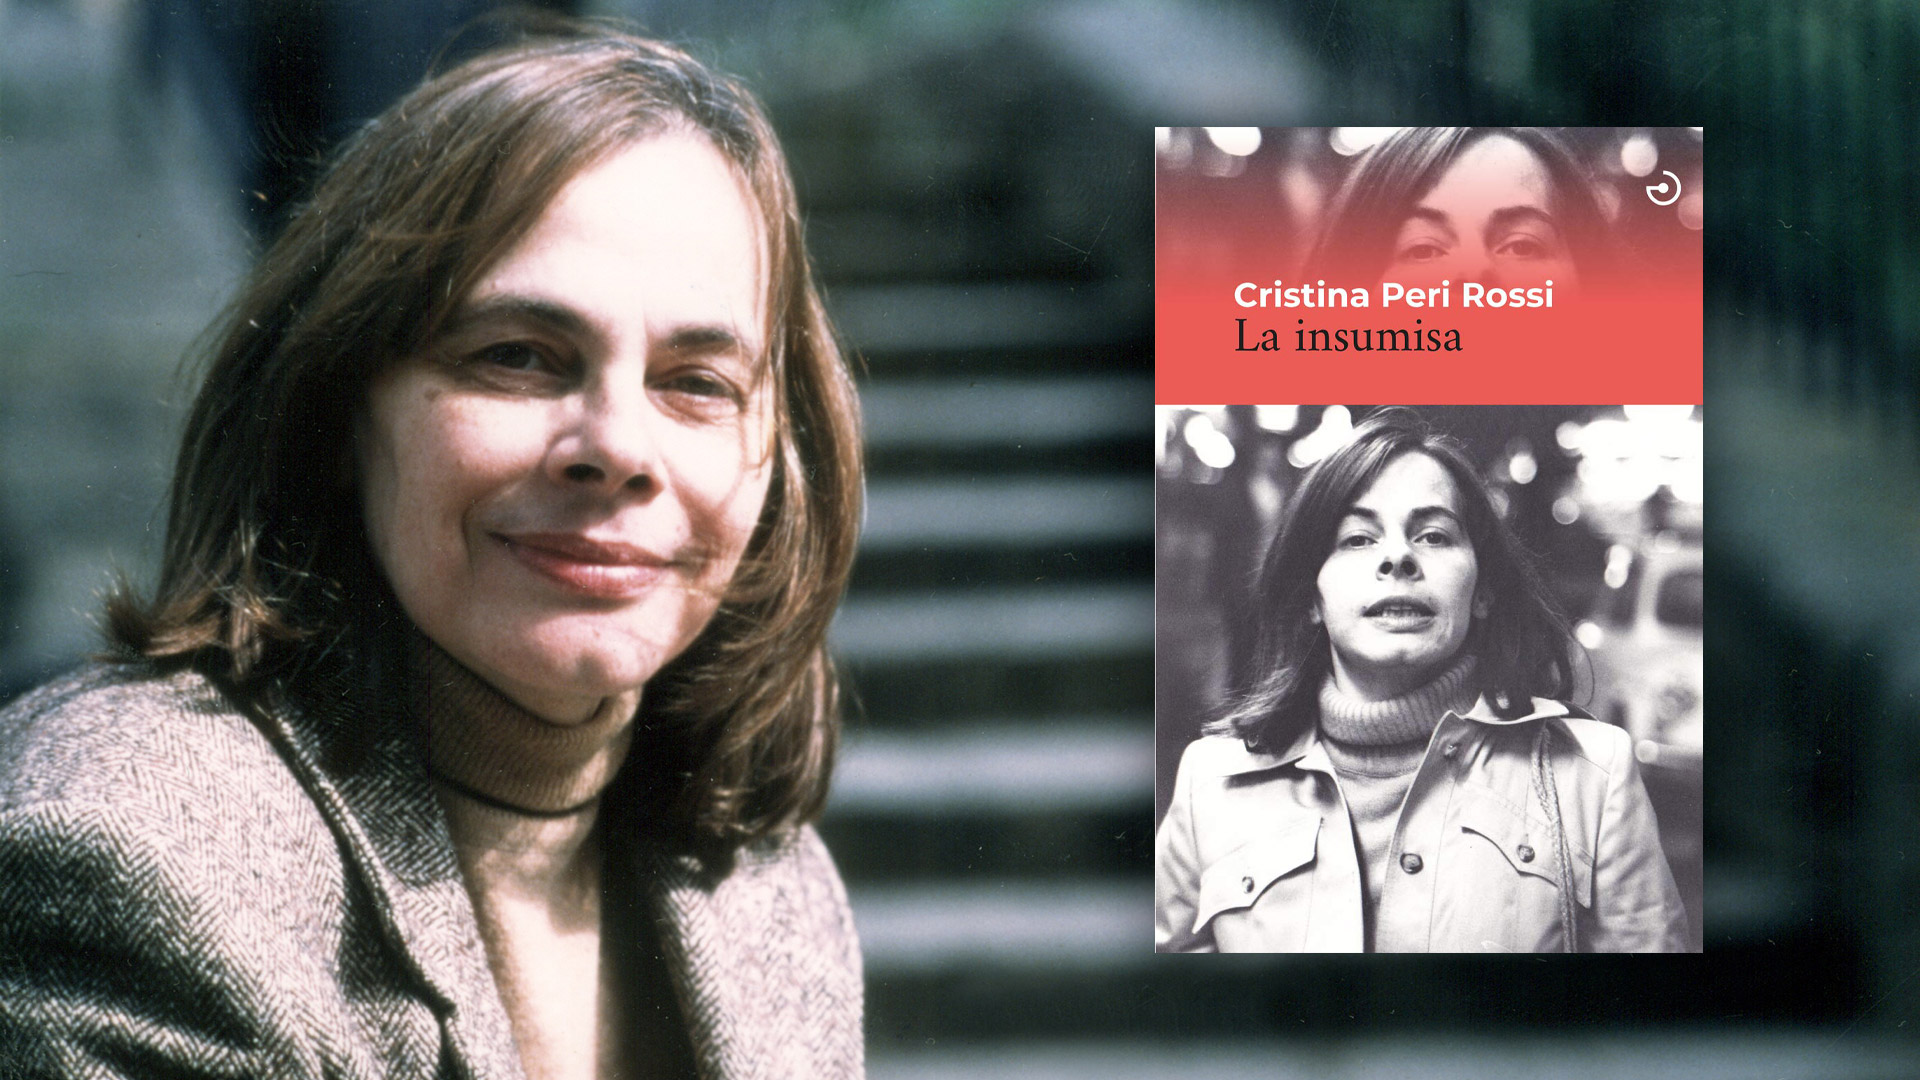 “La primera vez que me declaré a mi madre tenía tres años”: así empieza “La insumisa”, la autobiografía de Cristina Peri Rossi